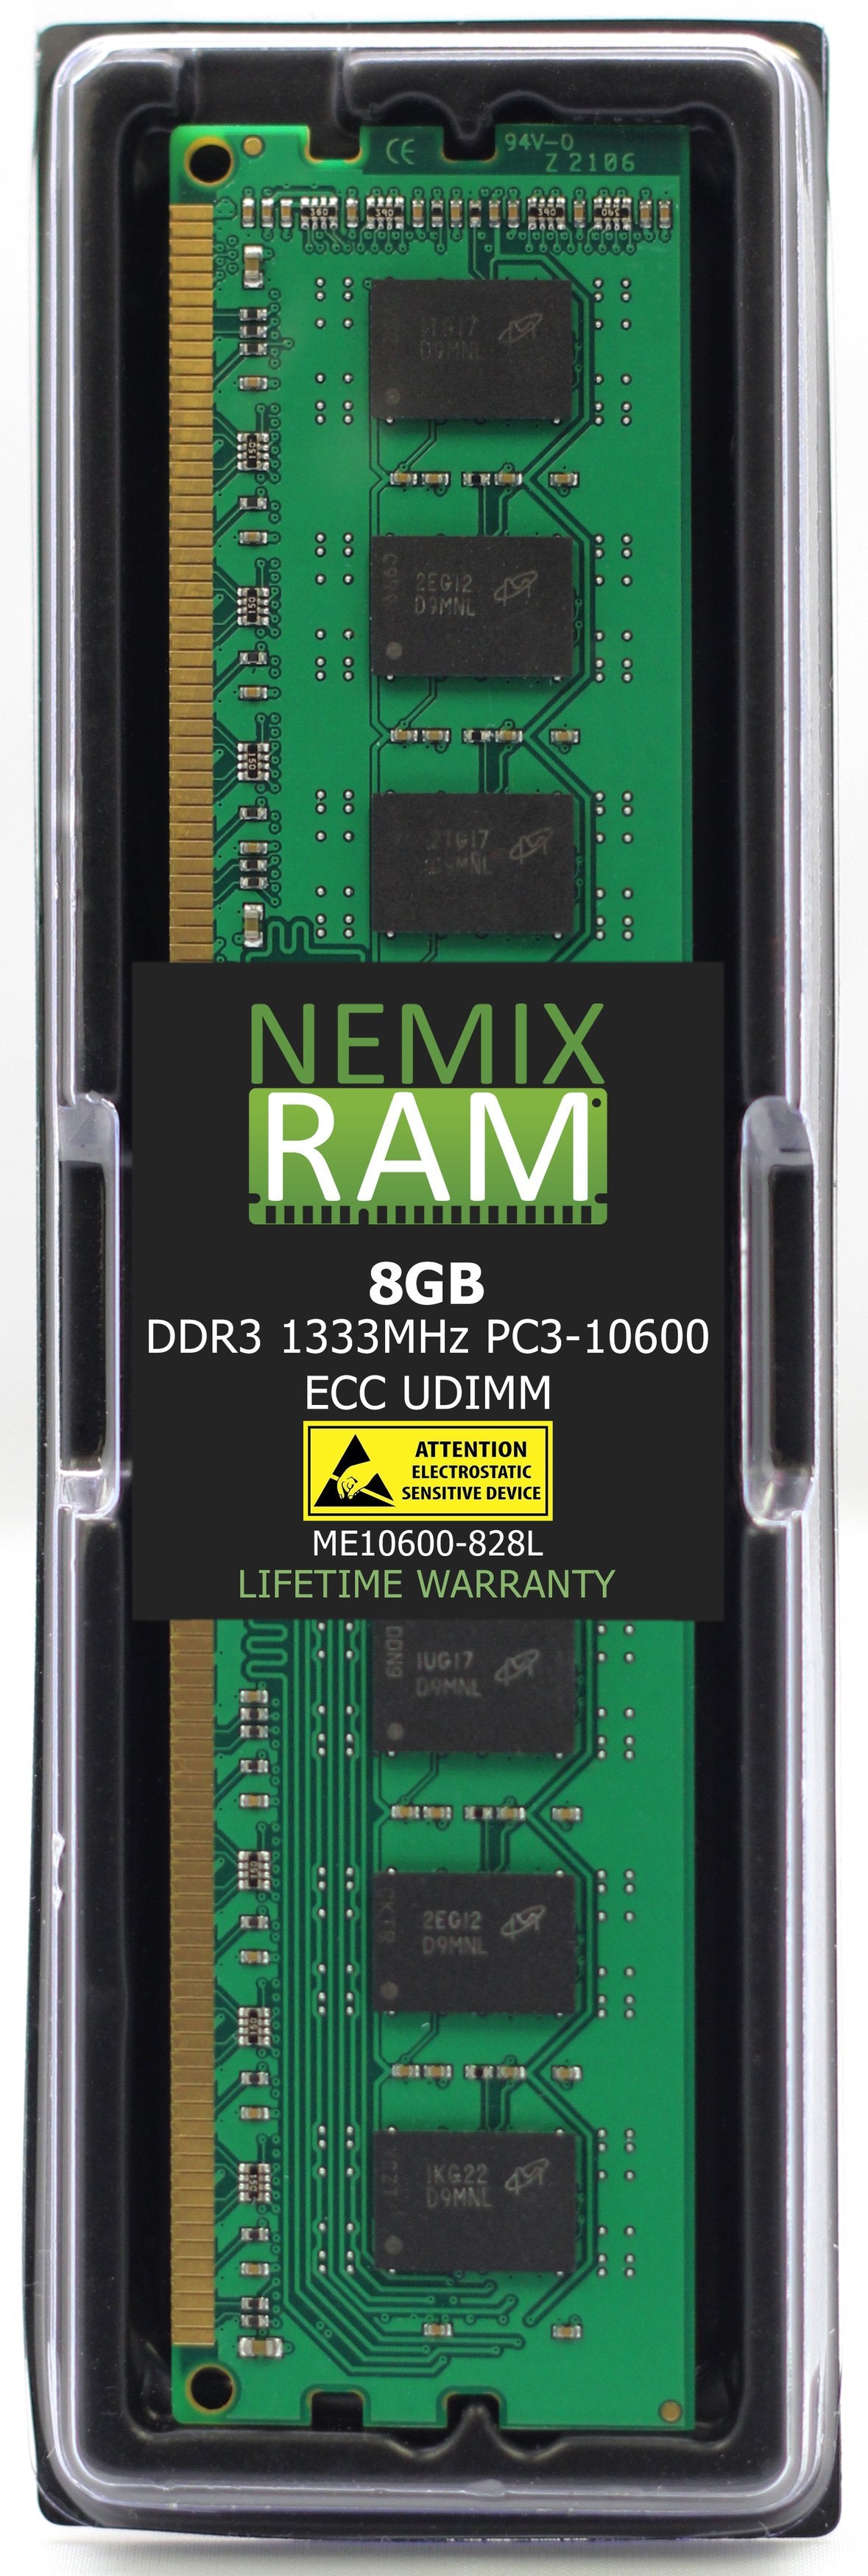 8GB DDR3 1333MHZ PC3-10600 ECC UDIMM Compatible with Supermicro MEM-DR380L-CL01-EU13